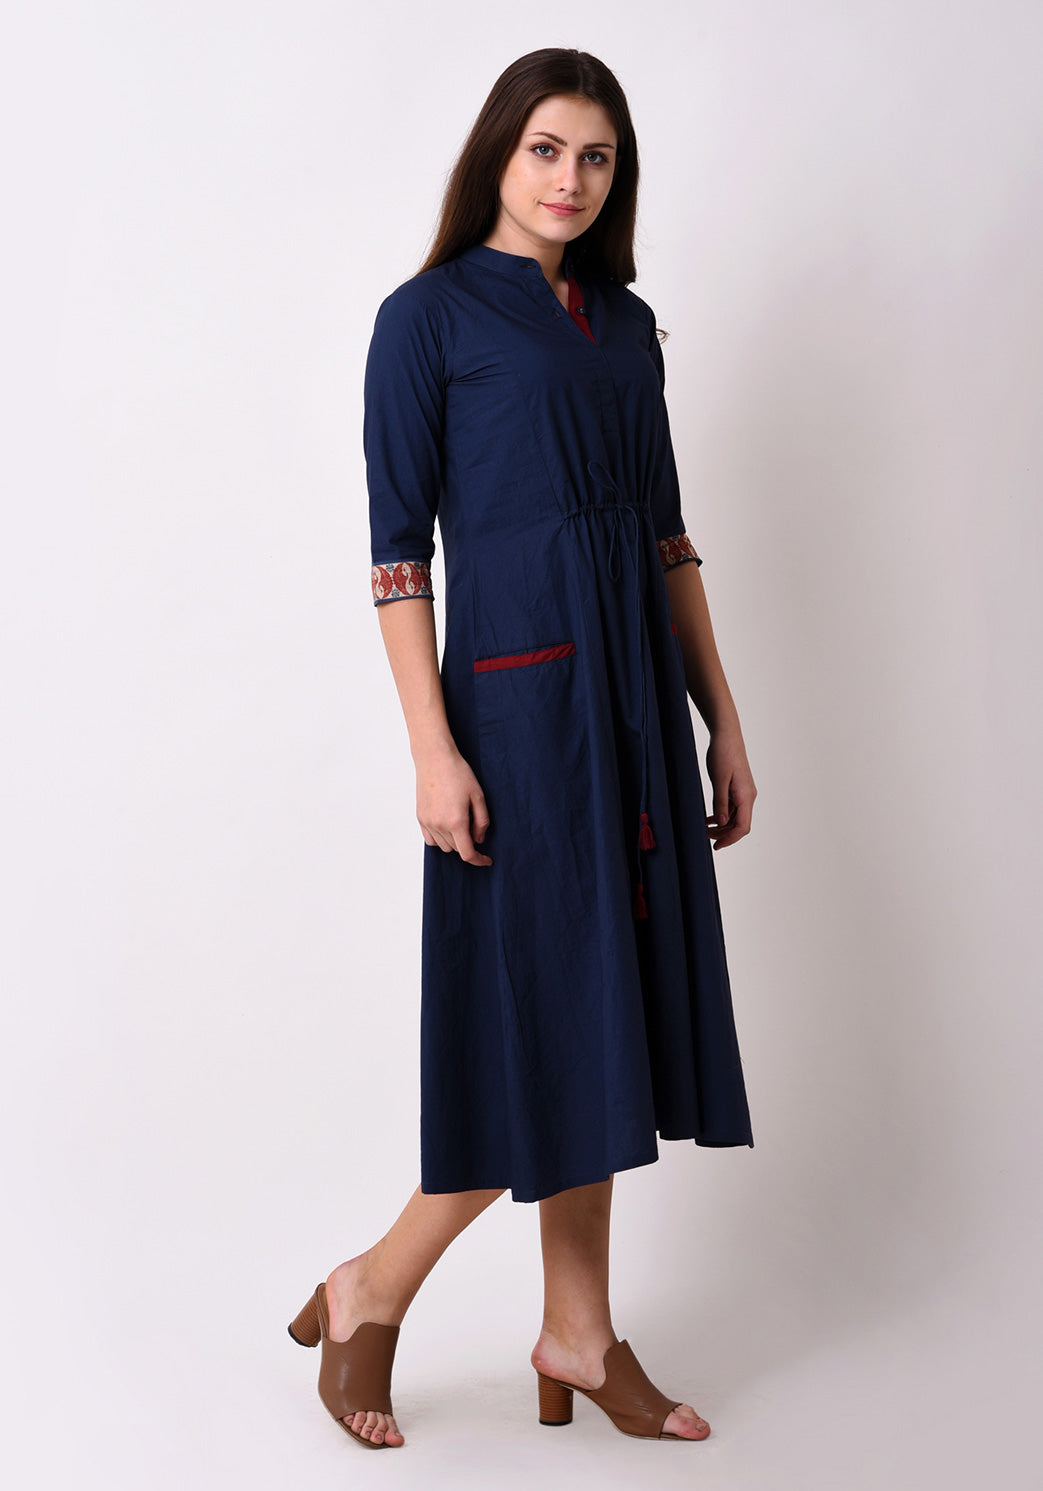 Front Tie-up Welt Pocket Dress - Navy Blue